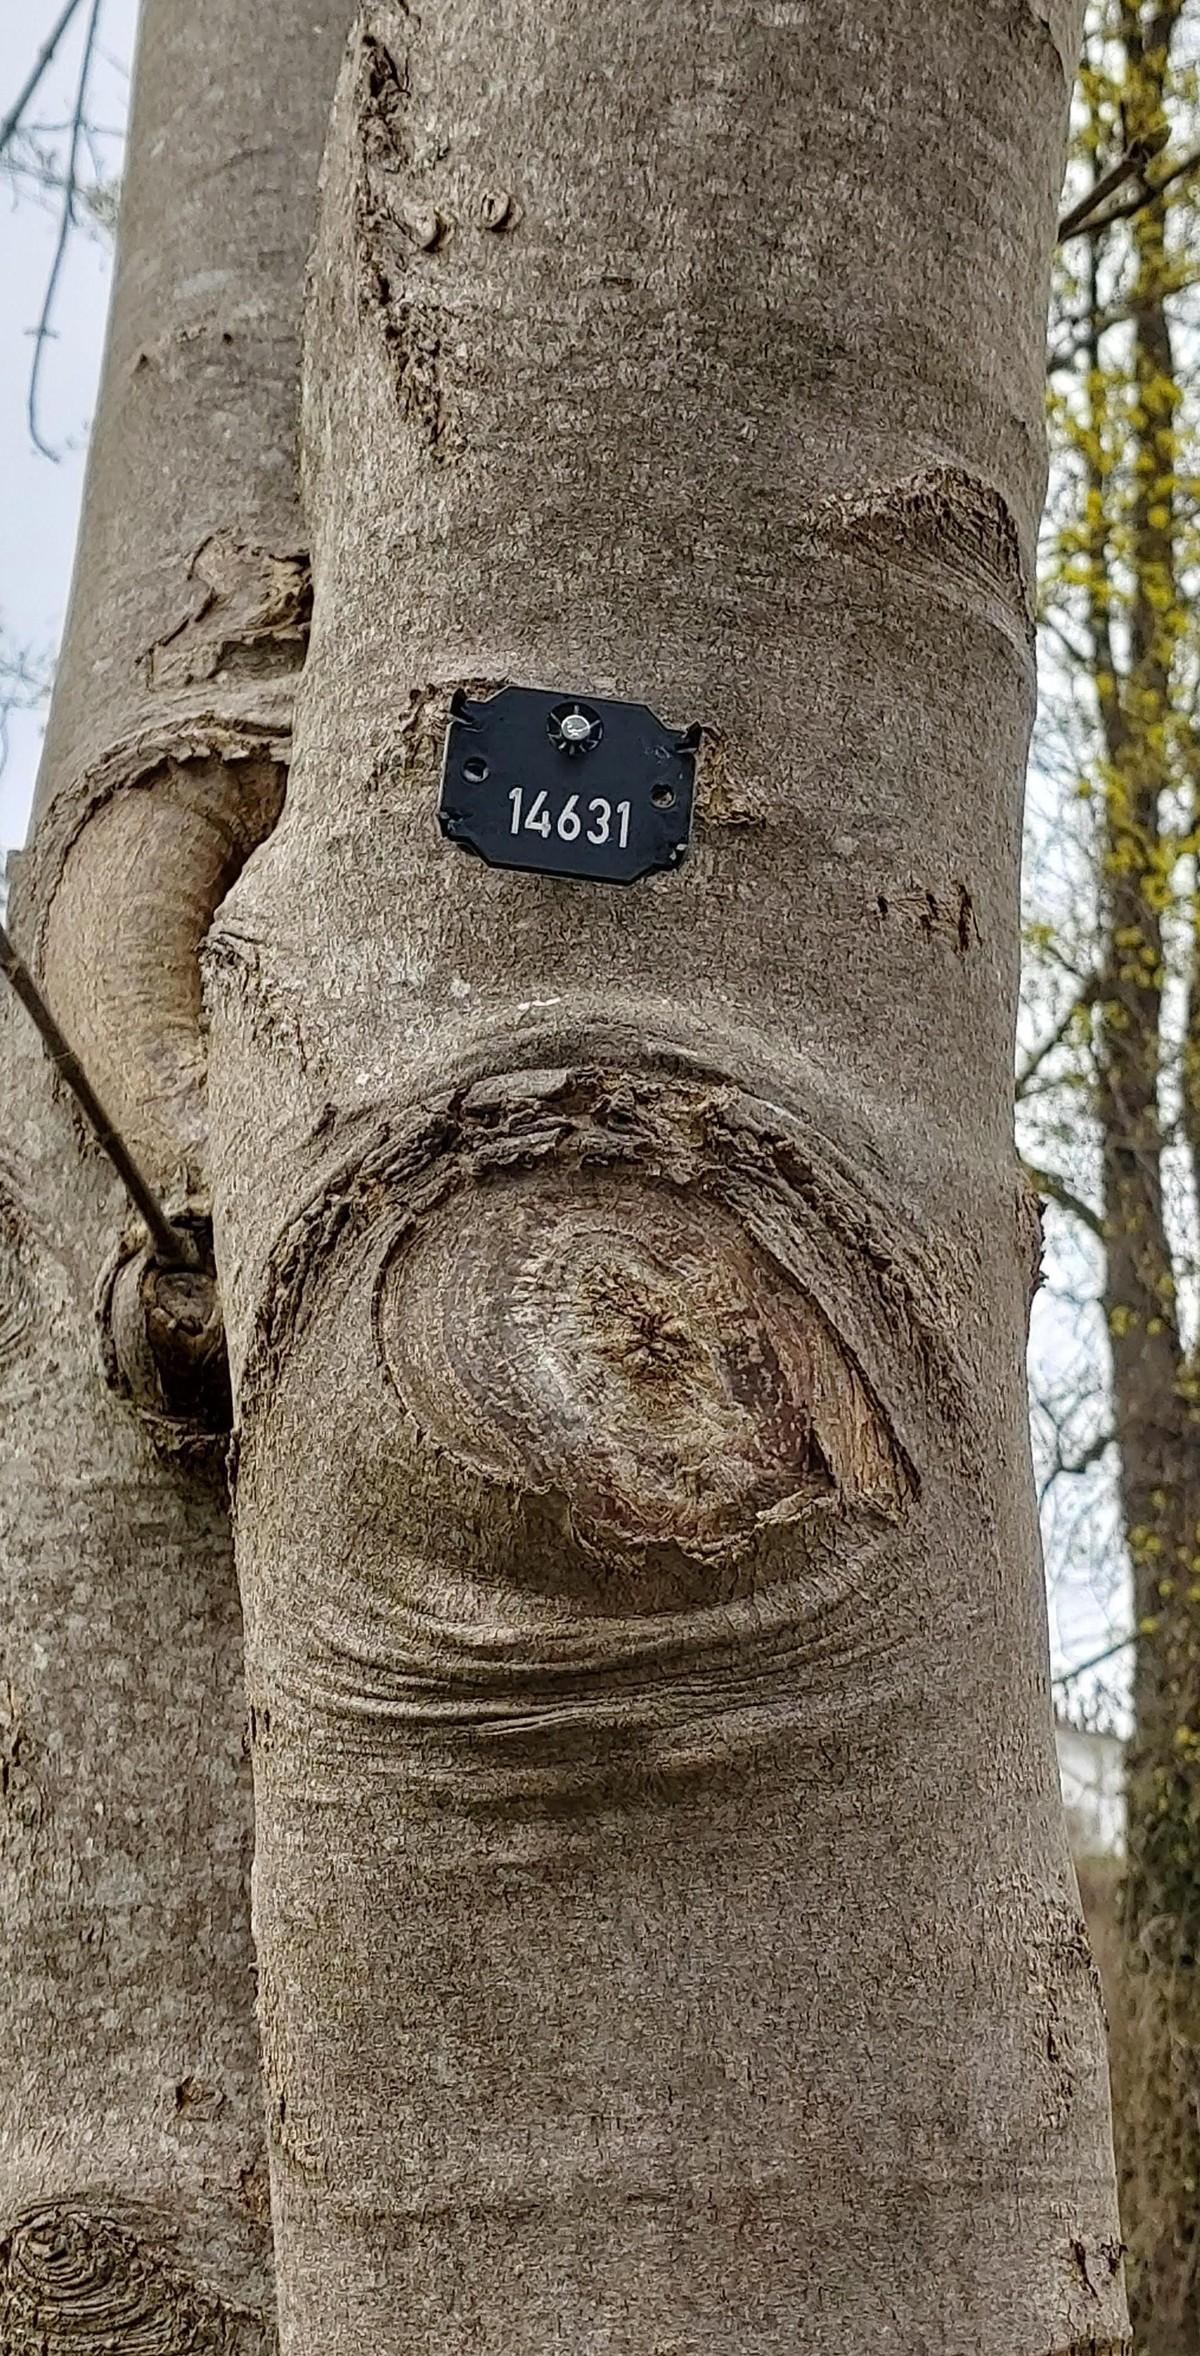 Jeder Baum wird mit der Nummer aus dem Baumkataster gekennzeichnet. | Foto: pagecouture